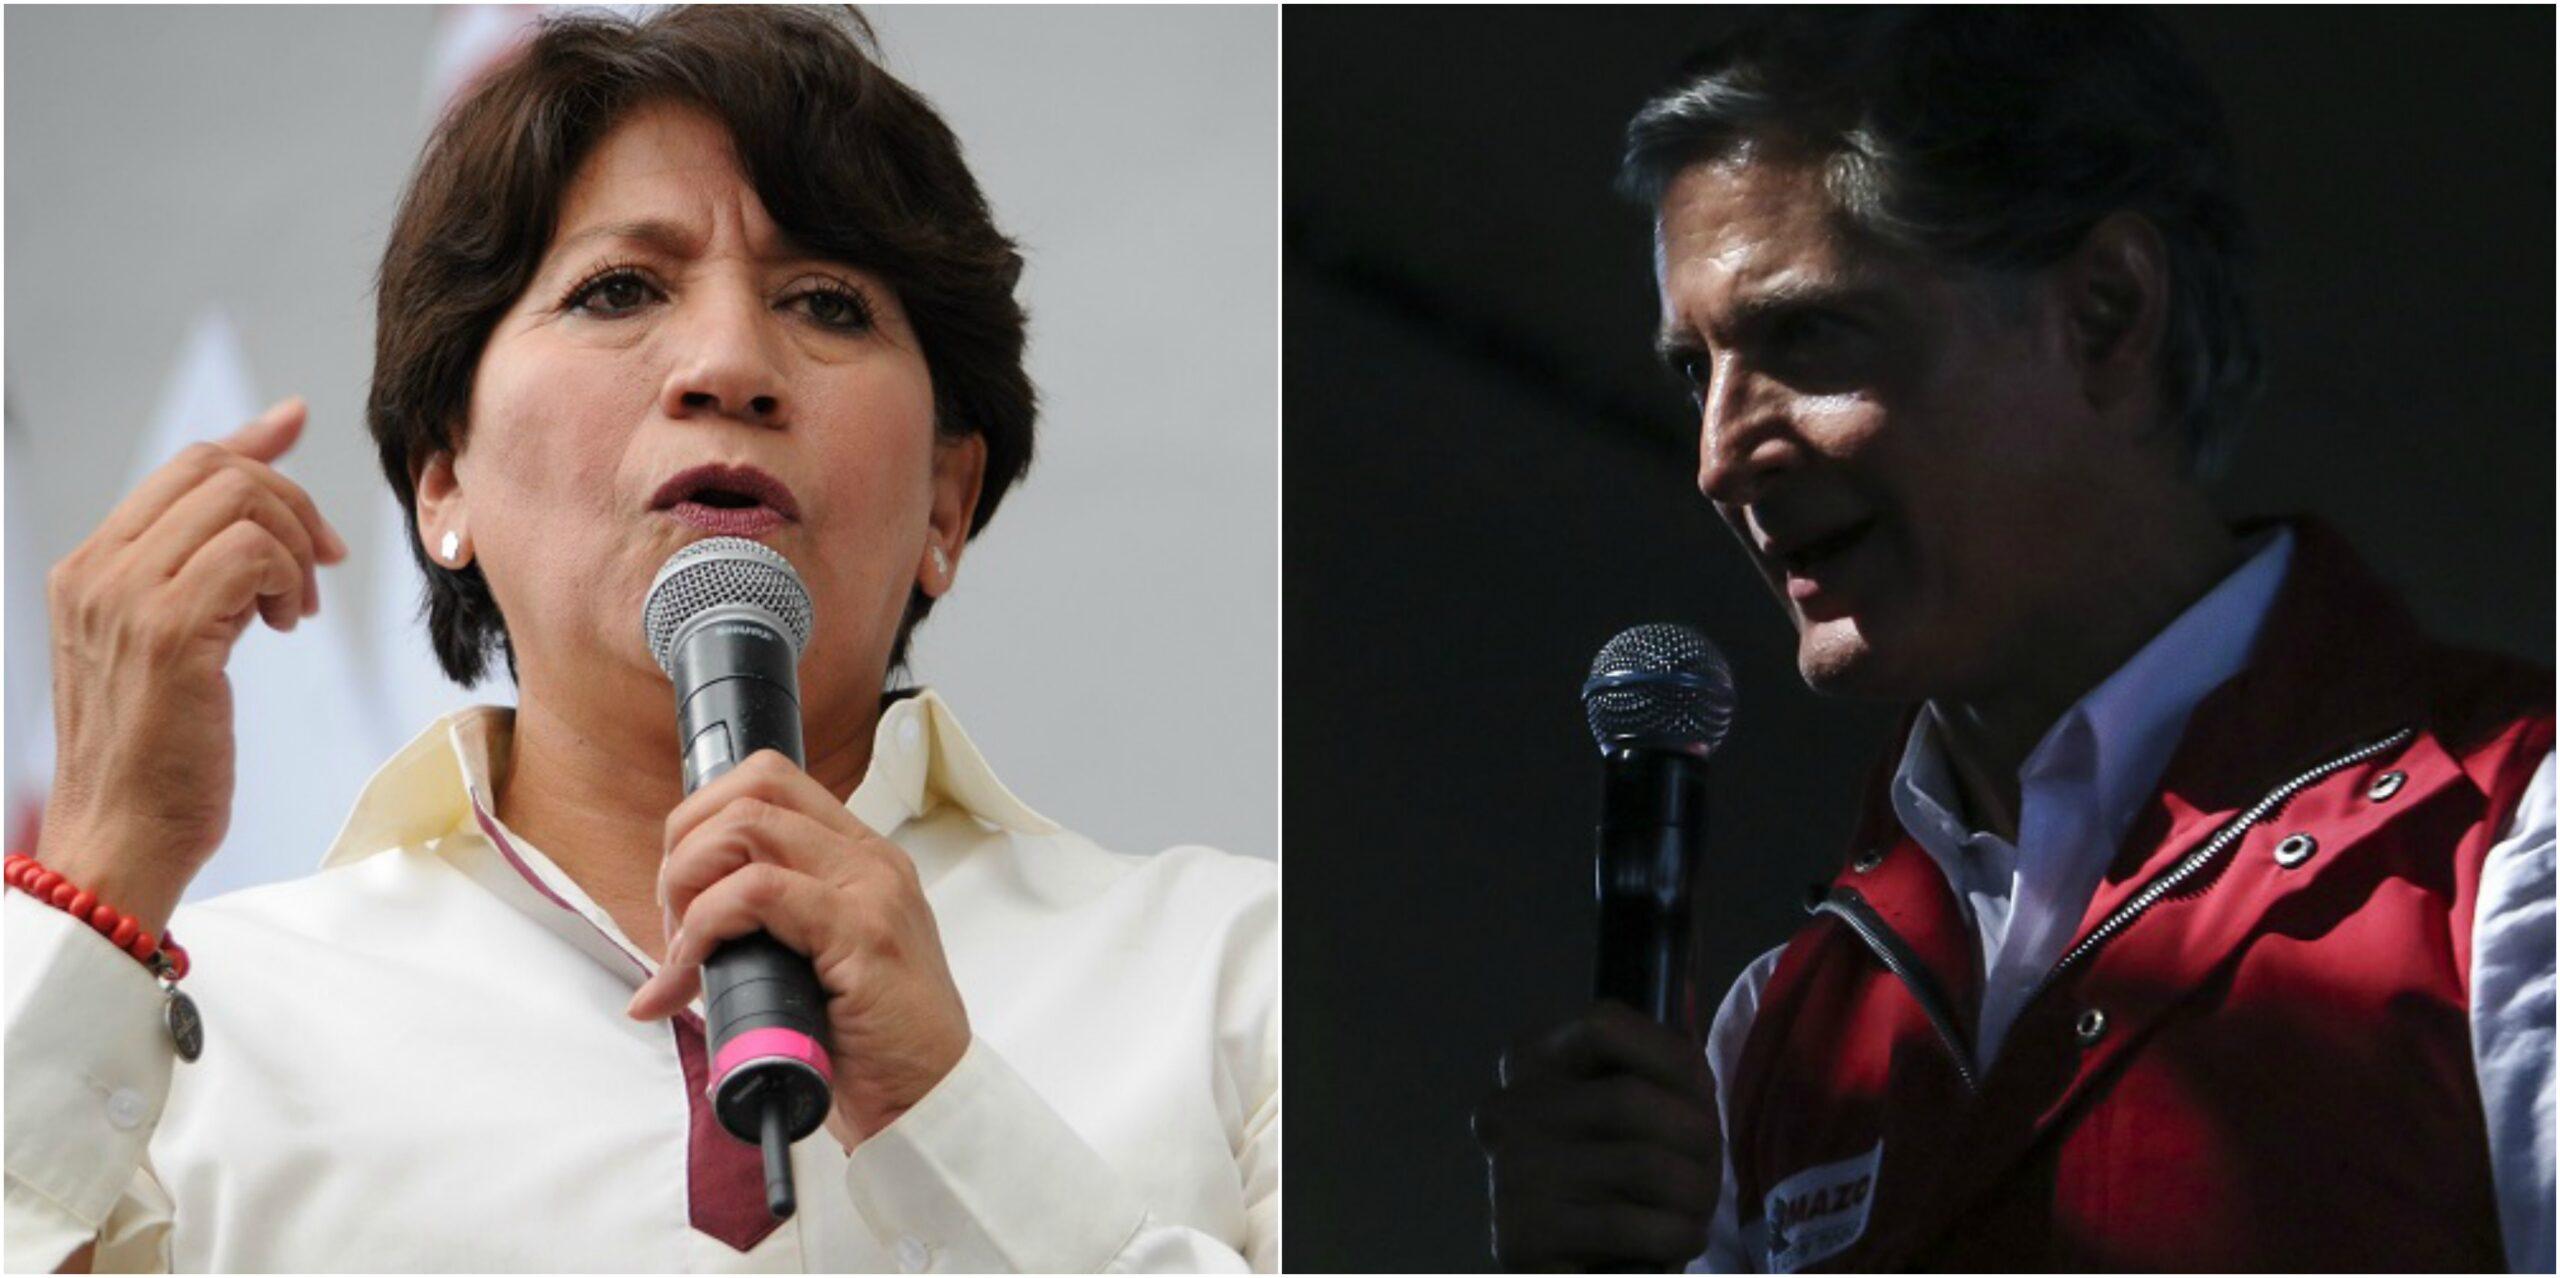 Edomex: Encuestas muestran un duelo cerrado entre Delfina y Del Mazo a 4 días de la elección